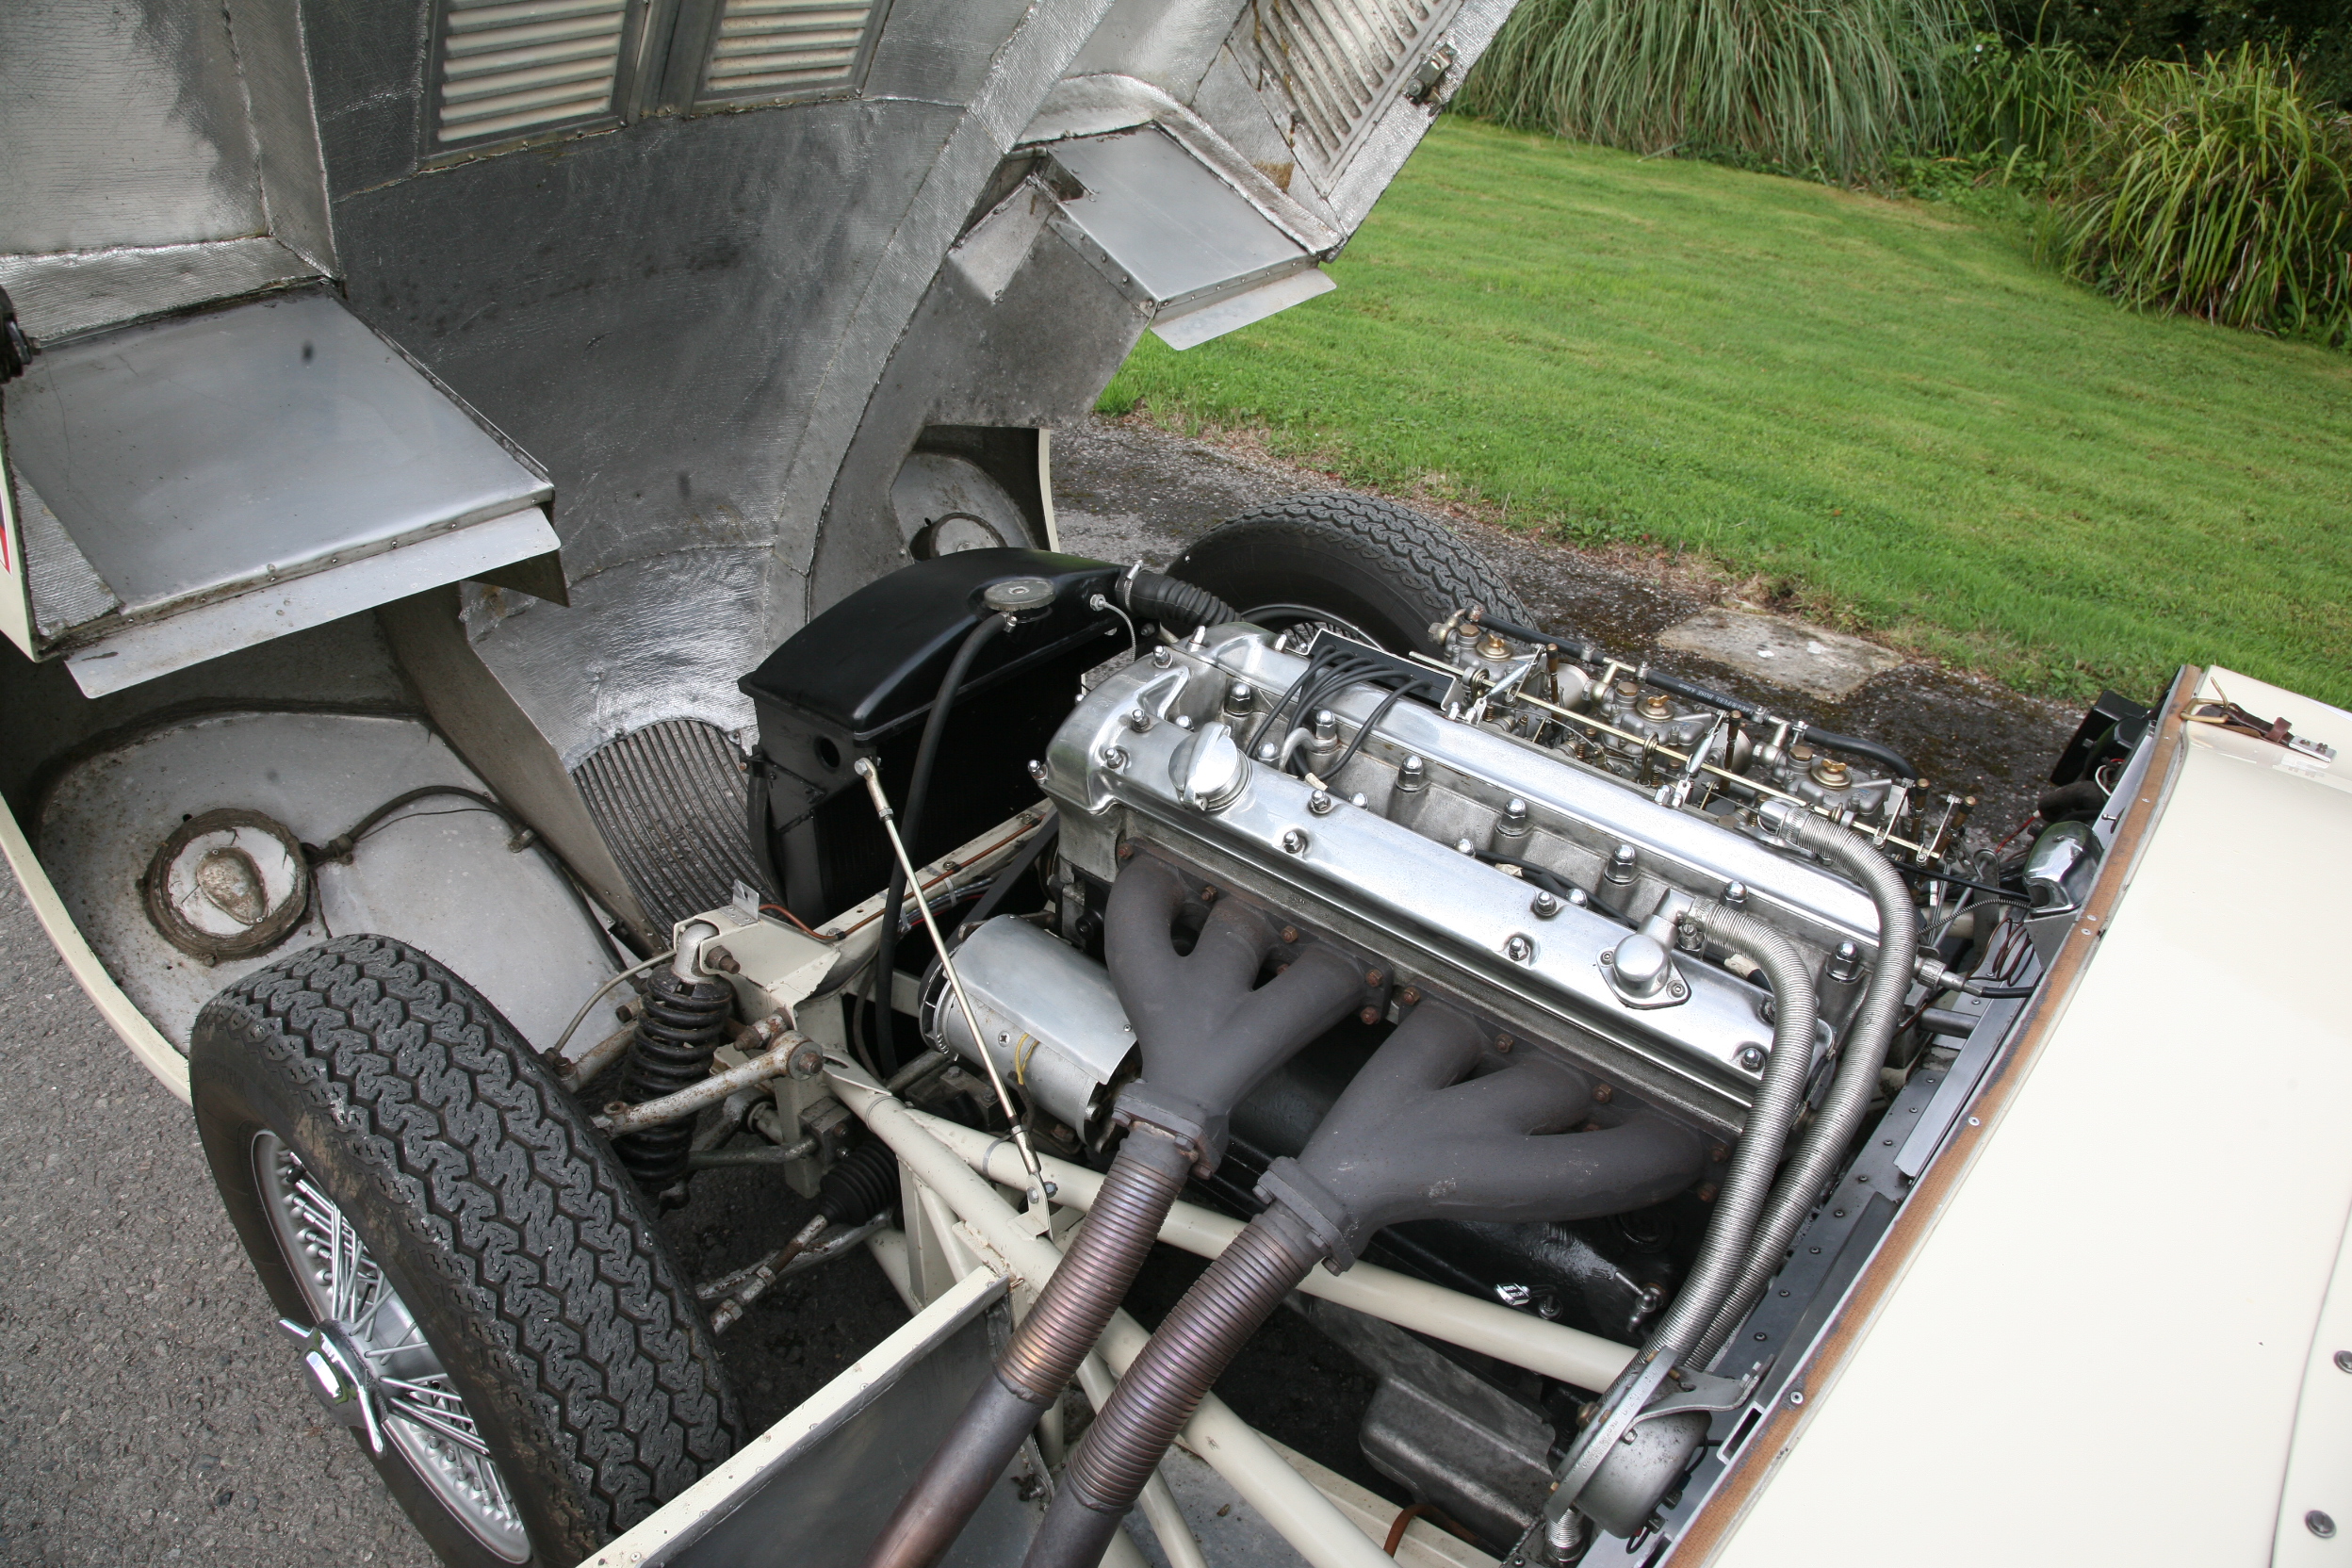 Jaguar C-Type Replica